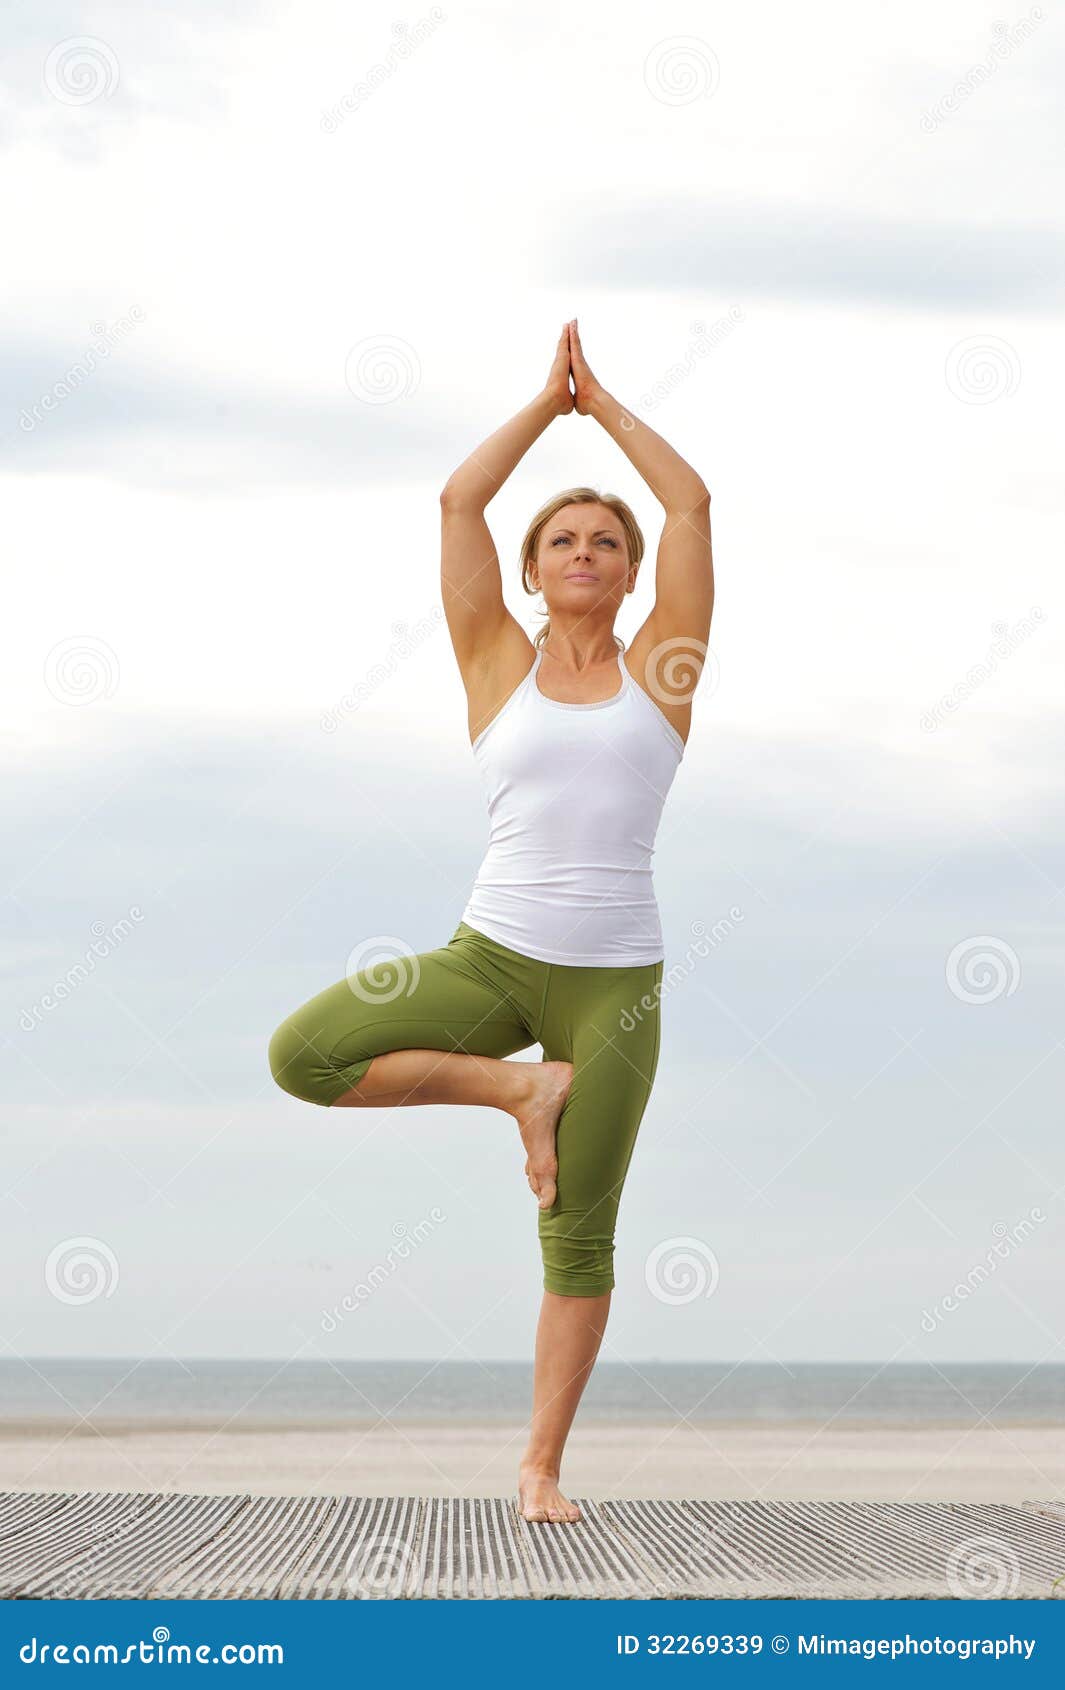 466 Yoga One Leg Balancing Pose Stock Photos - Free & Royalty-Free